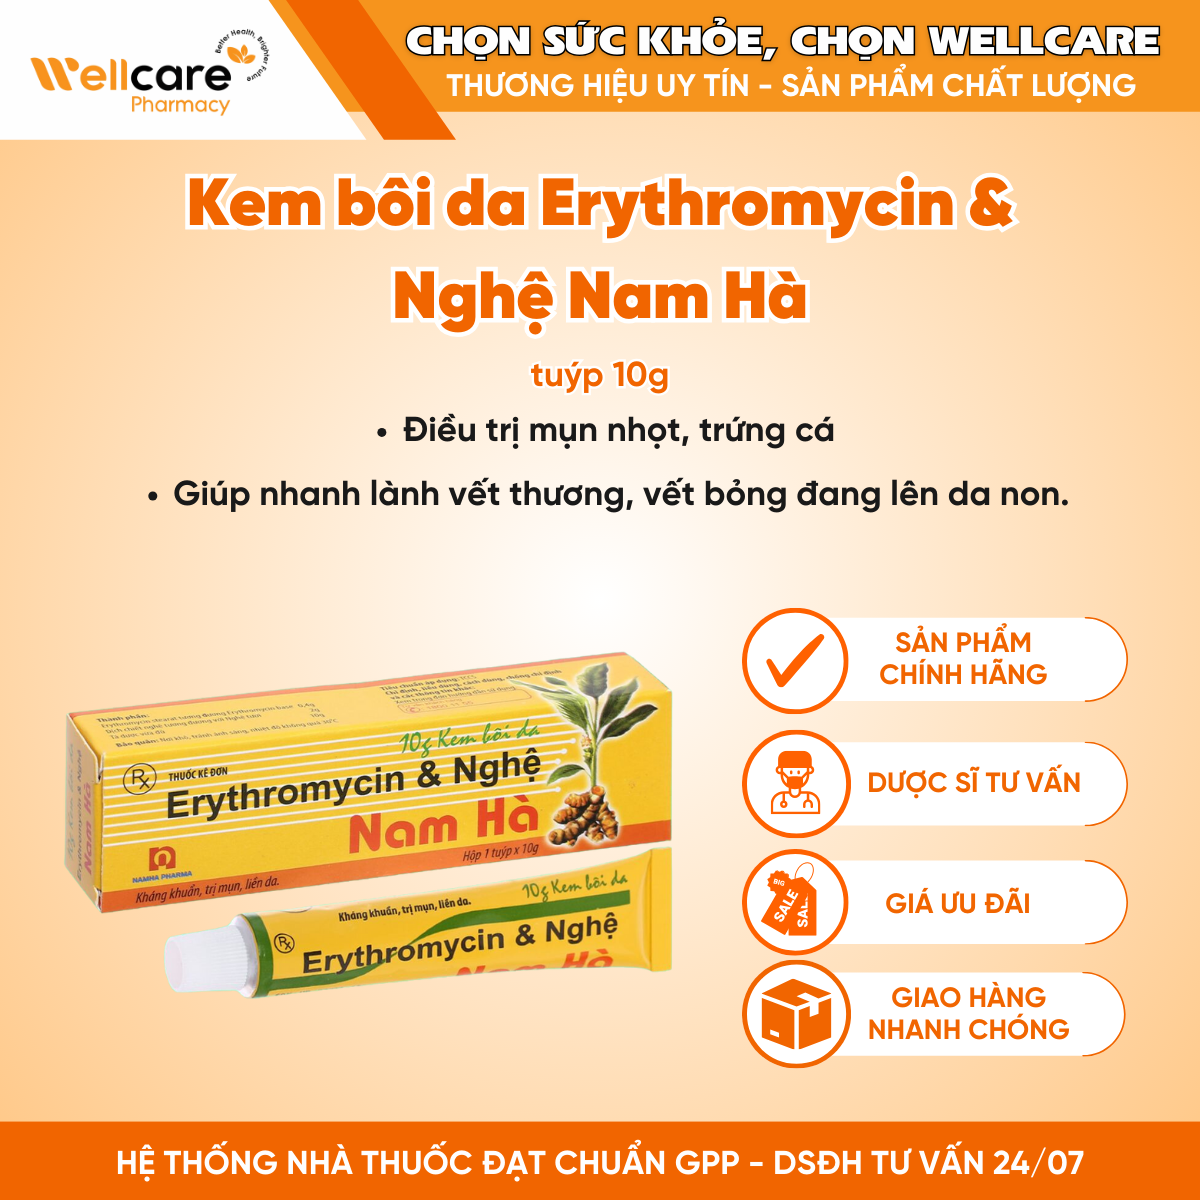 Kem bôi da Erythromycin & Nghệ Nam Hà điều trị mụn nhọt, trứng cá (Tuýp 10g)